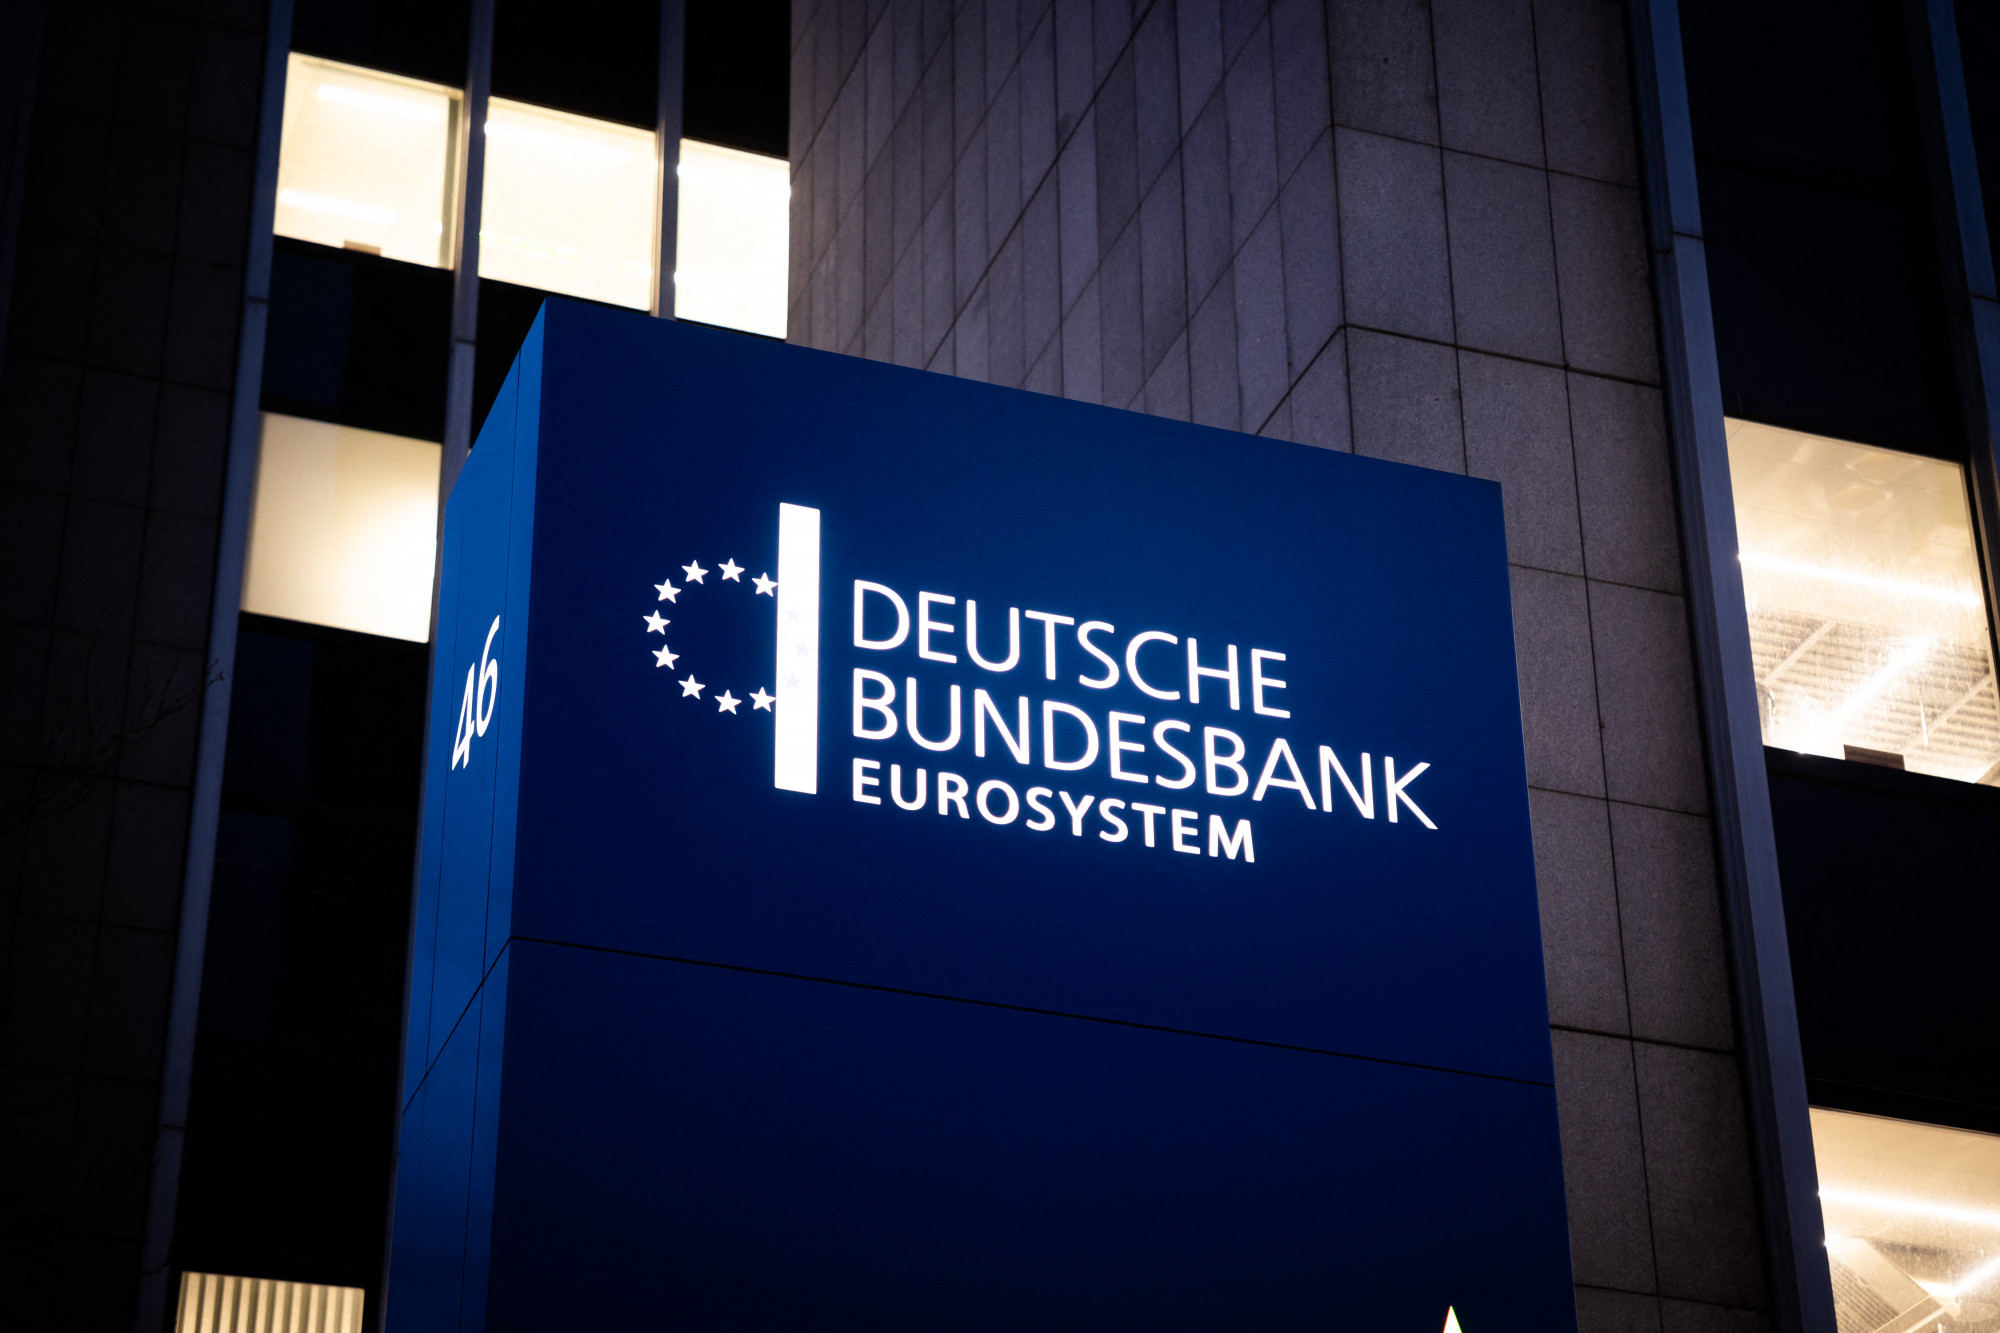 Németország valószínűleg recesszióban van a Bundesbank szerint